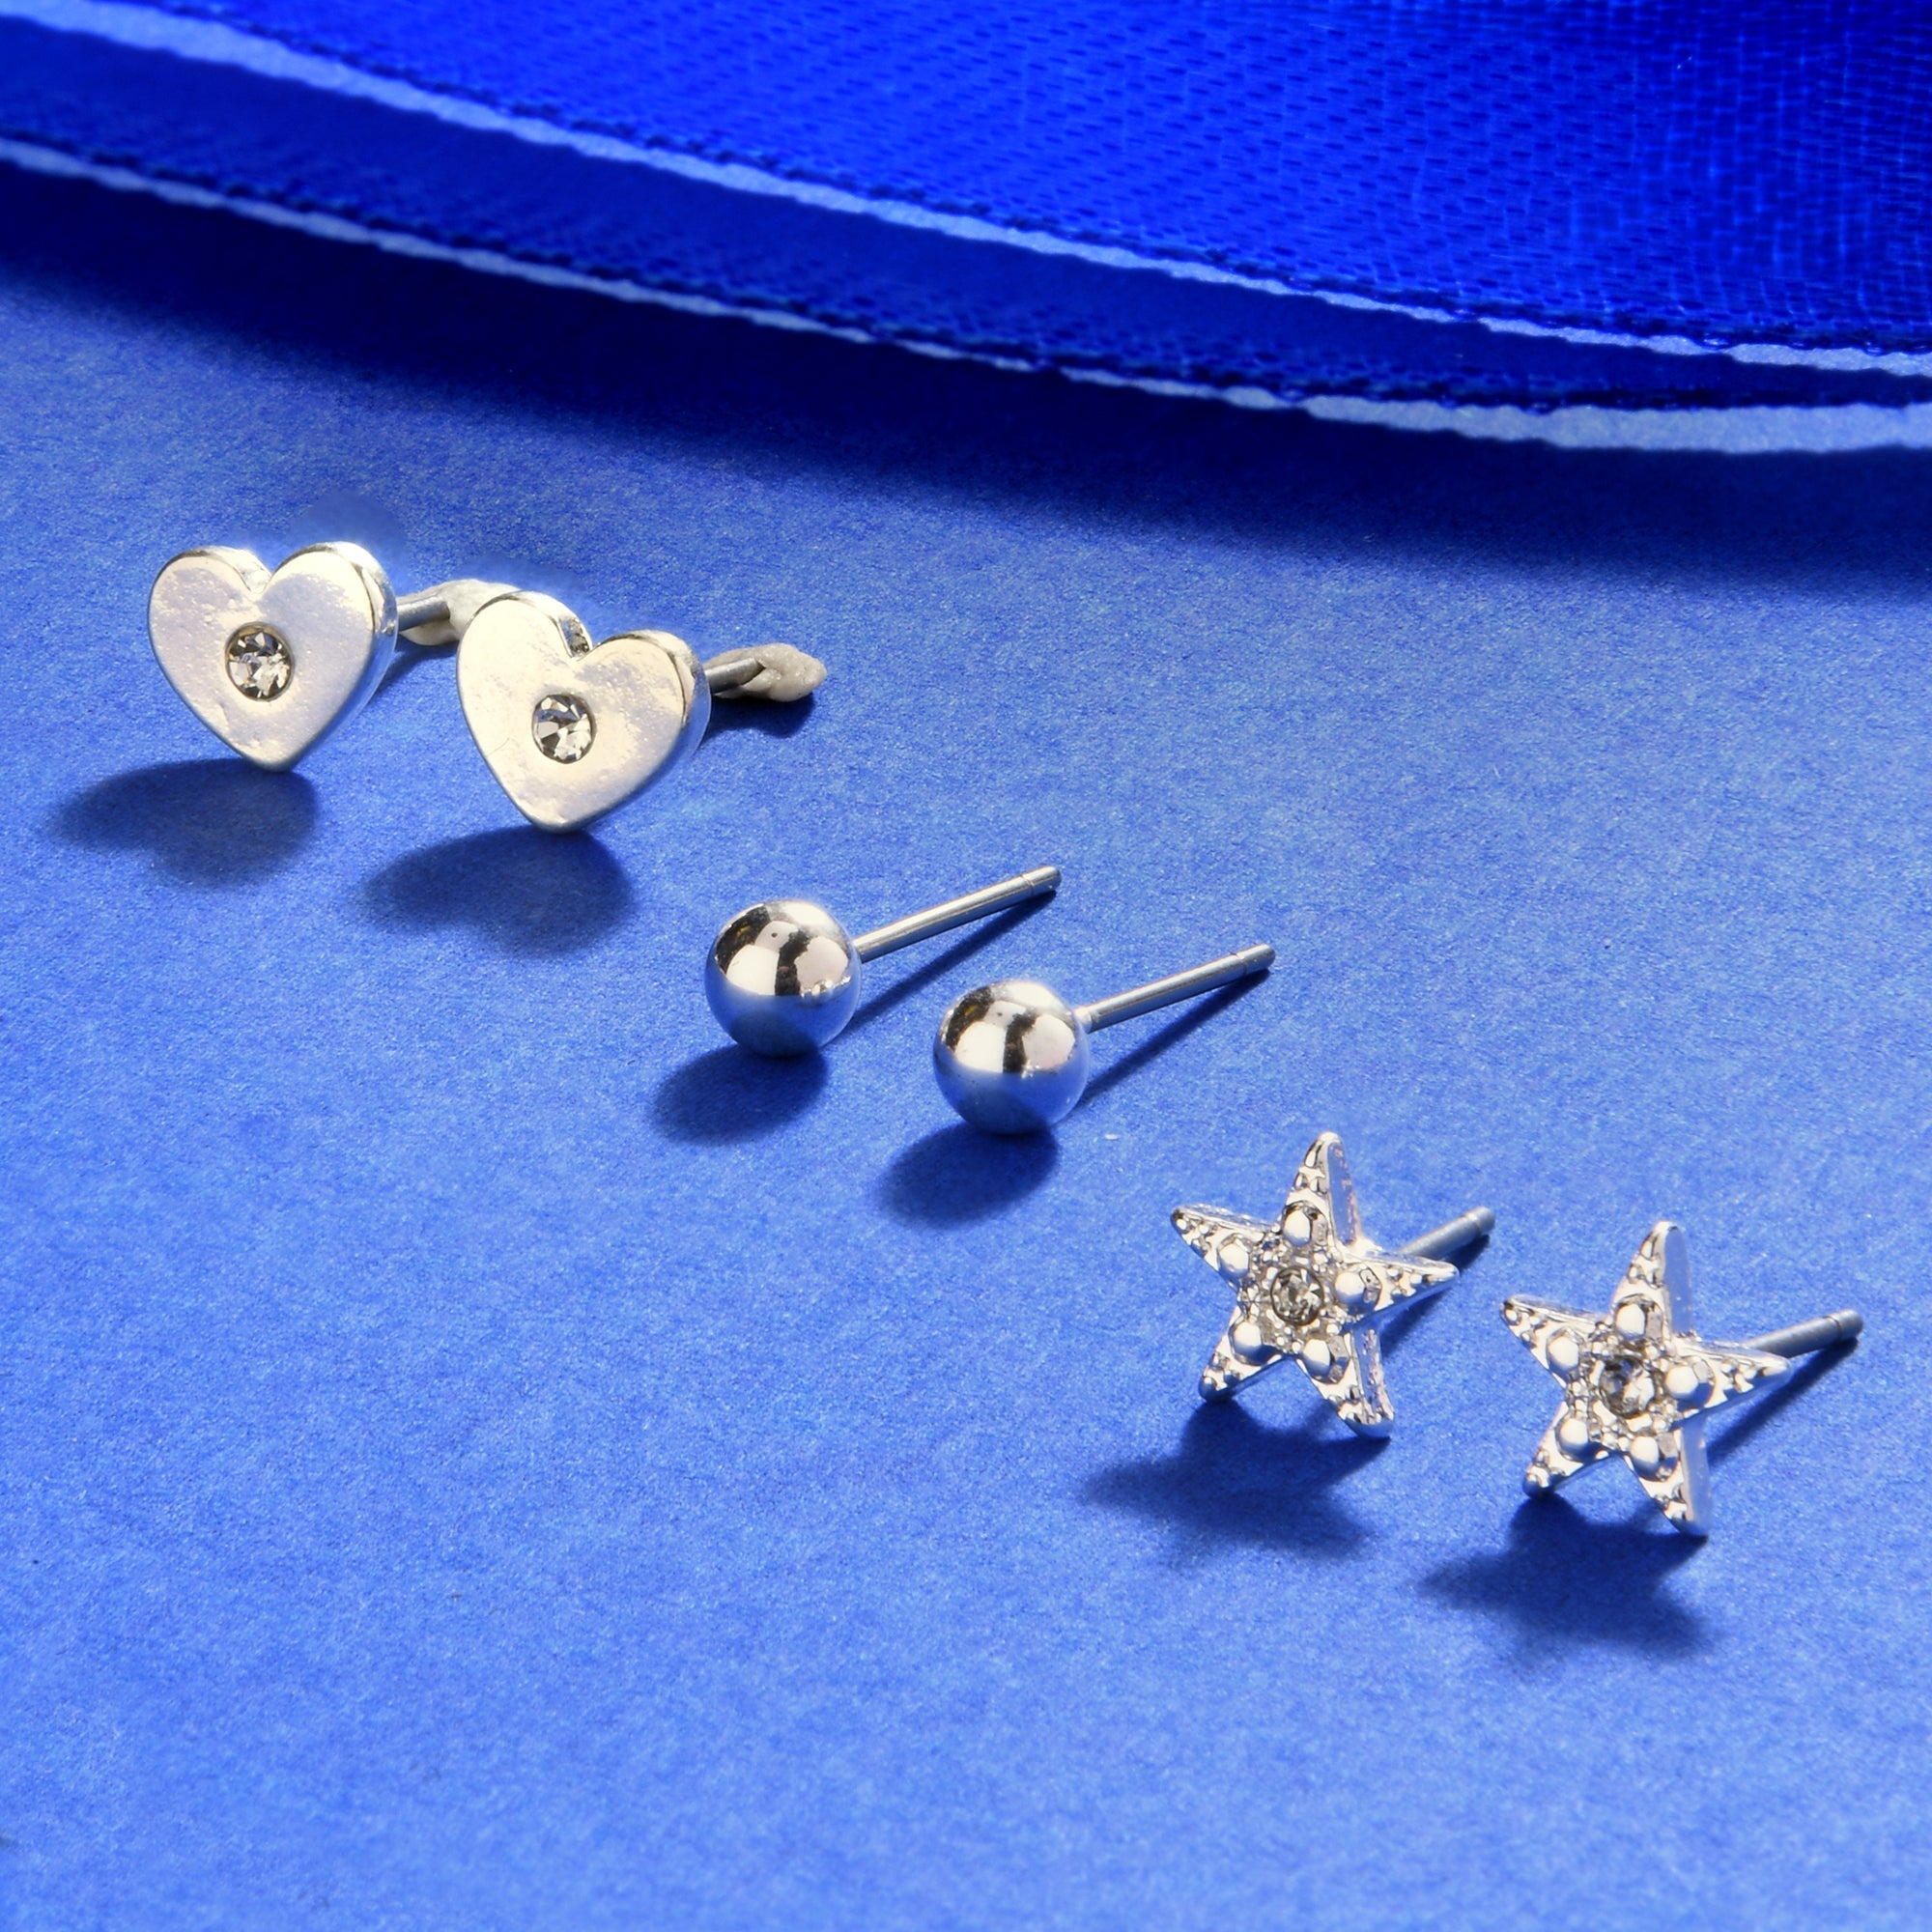 Accessorize London Women'S Silver Set Of 3 Heart Stars Stud Earring Pack